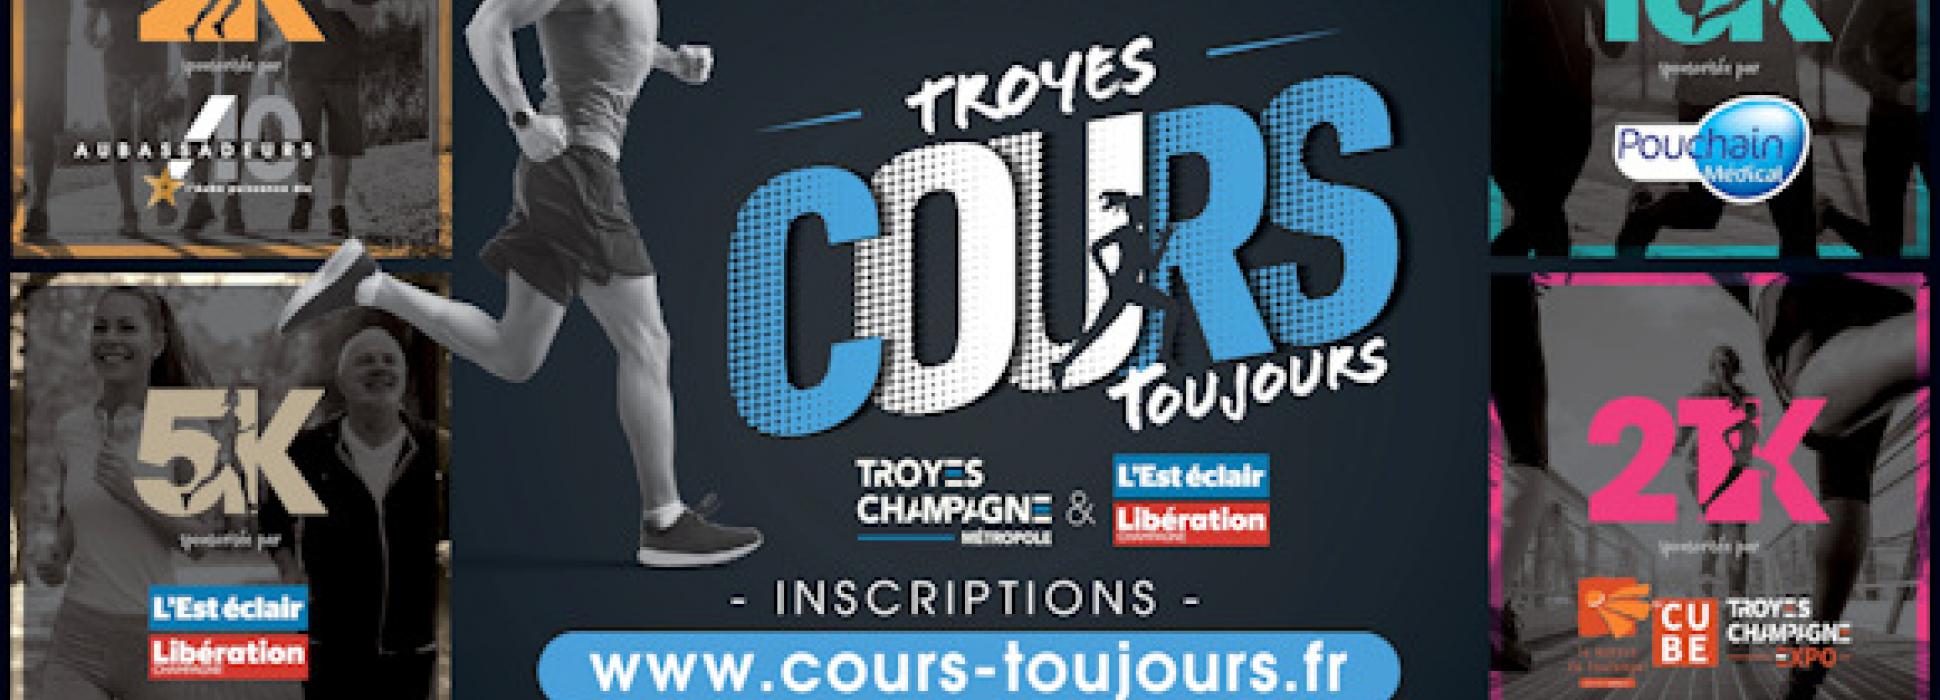 Troyes : Octobre Rose bat son plein dans l’Aube